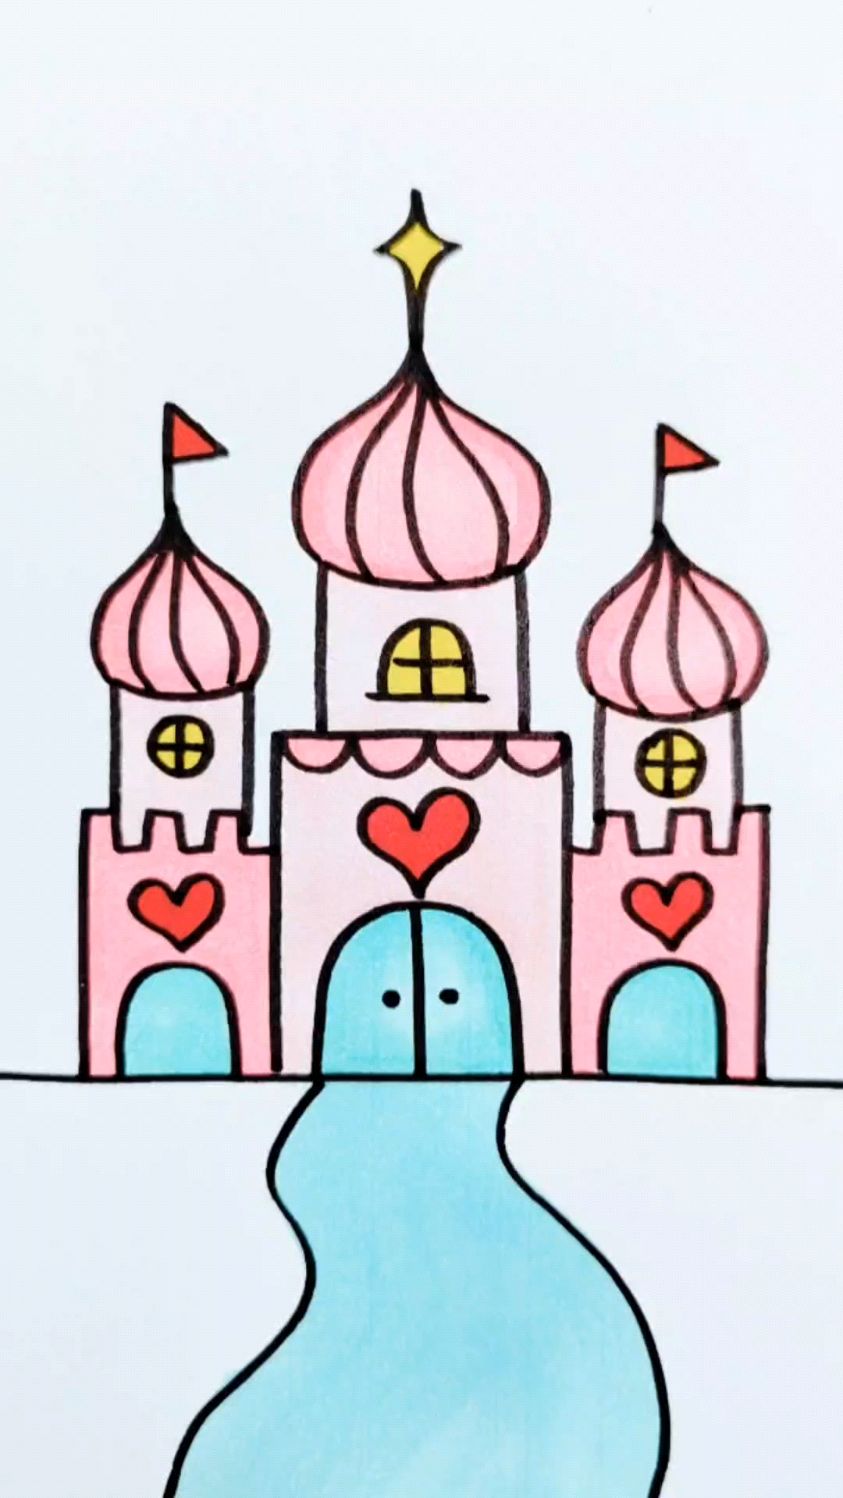 幼儿园公主城堡简笔画图片